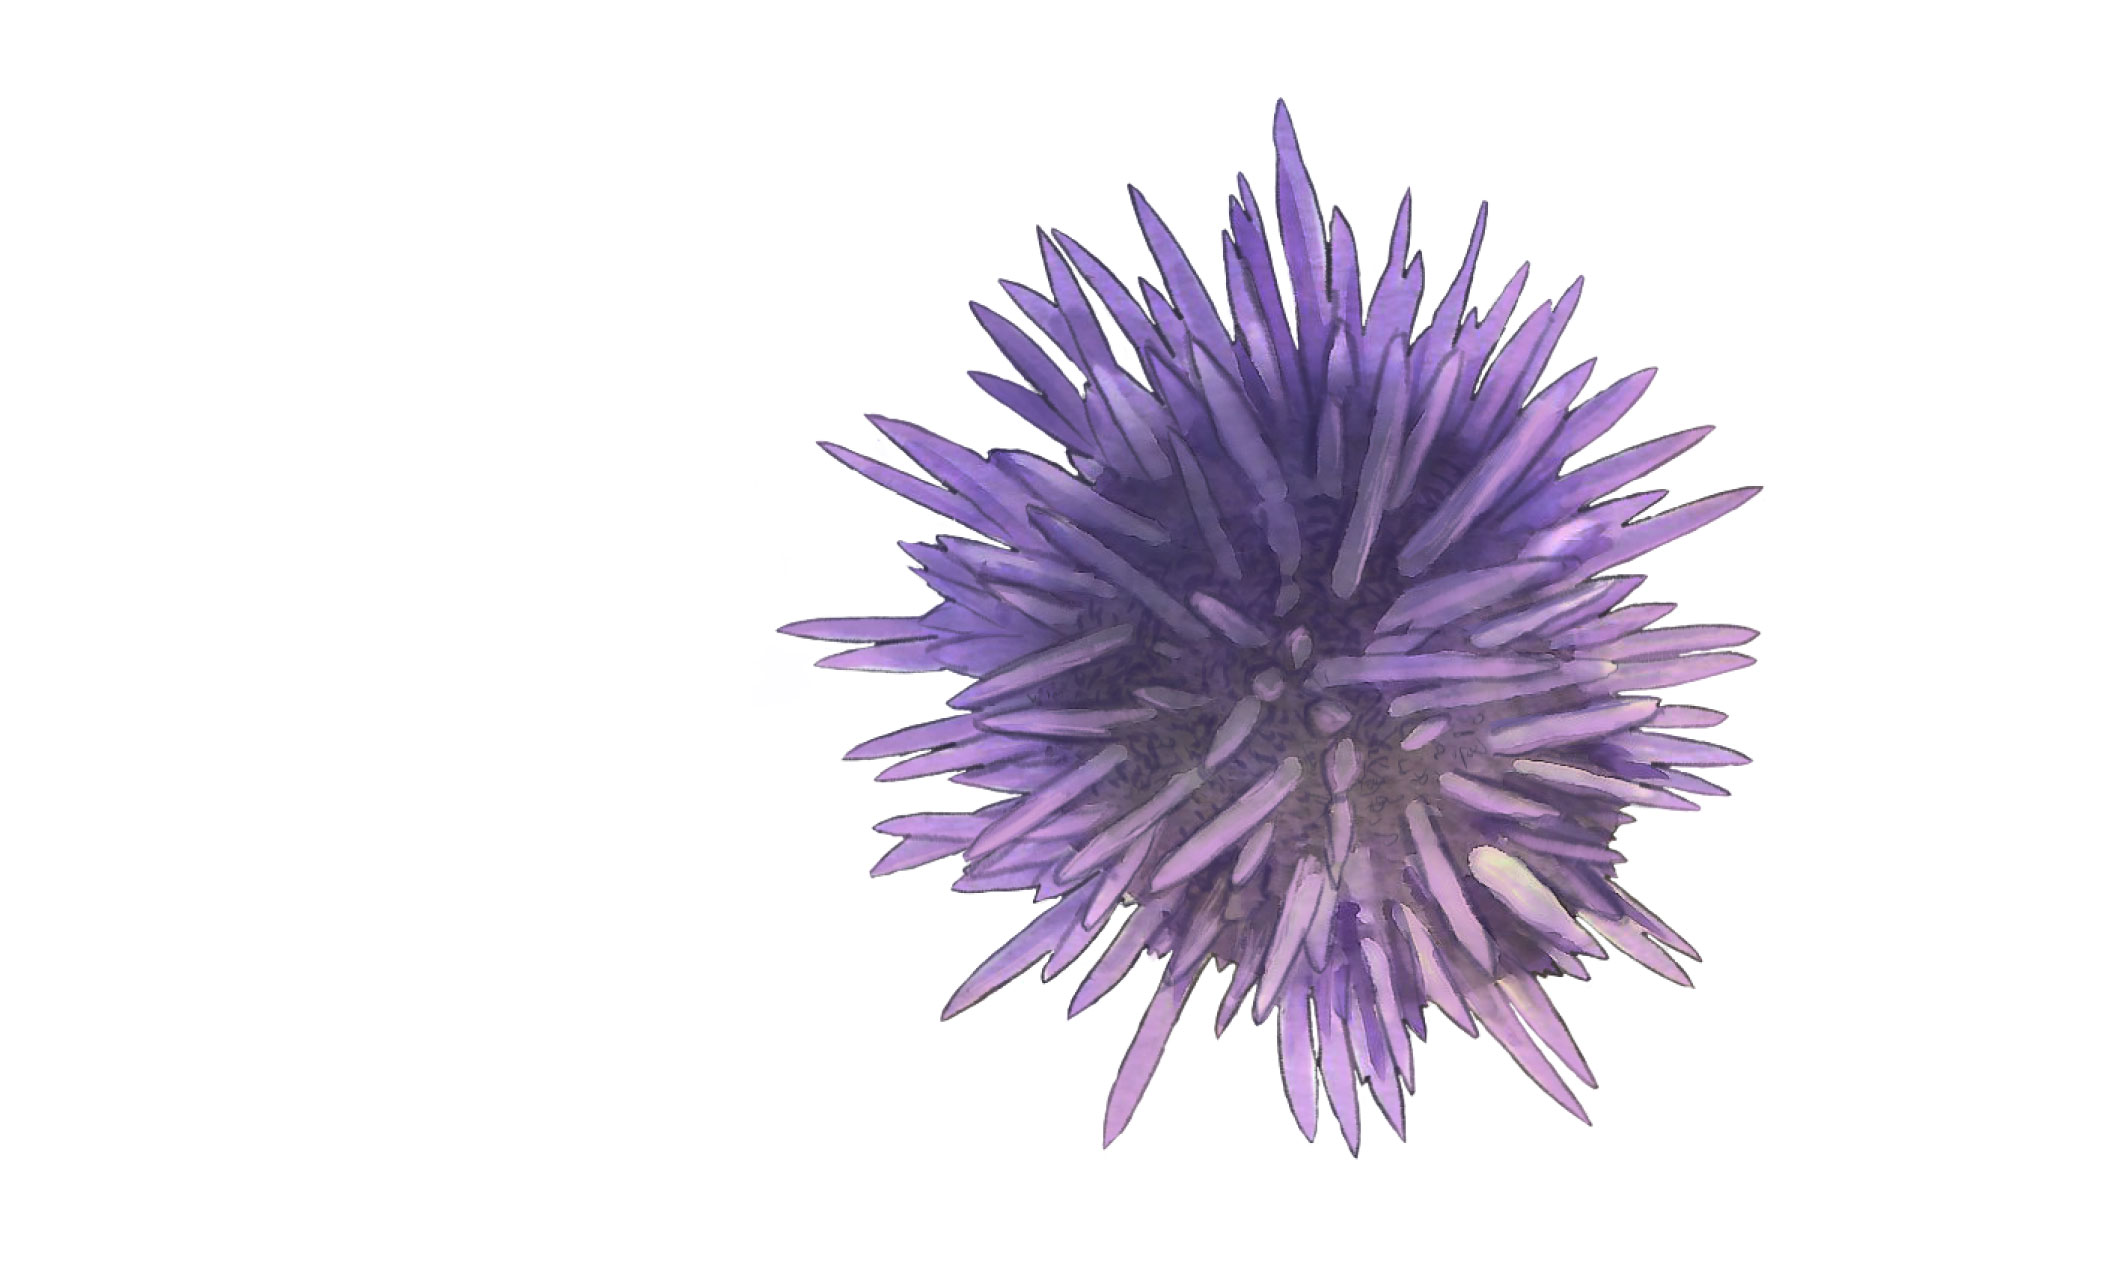 Sea urchin illustration